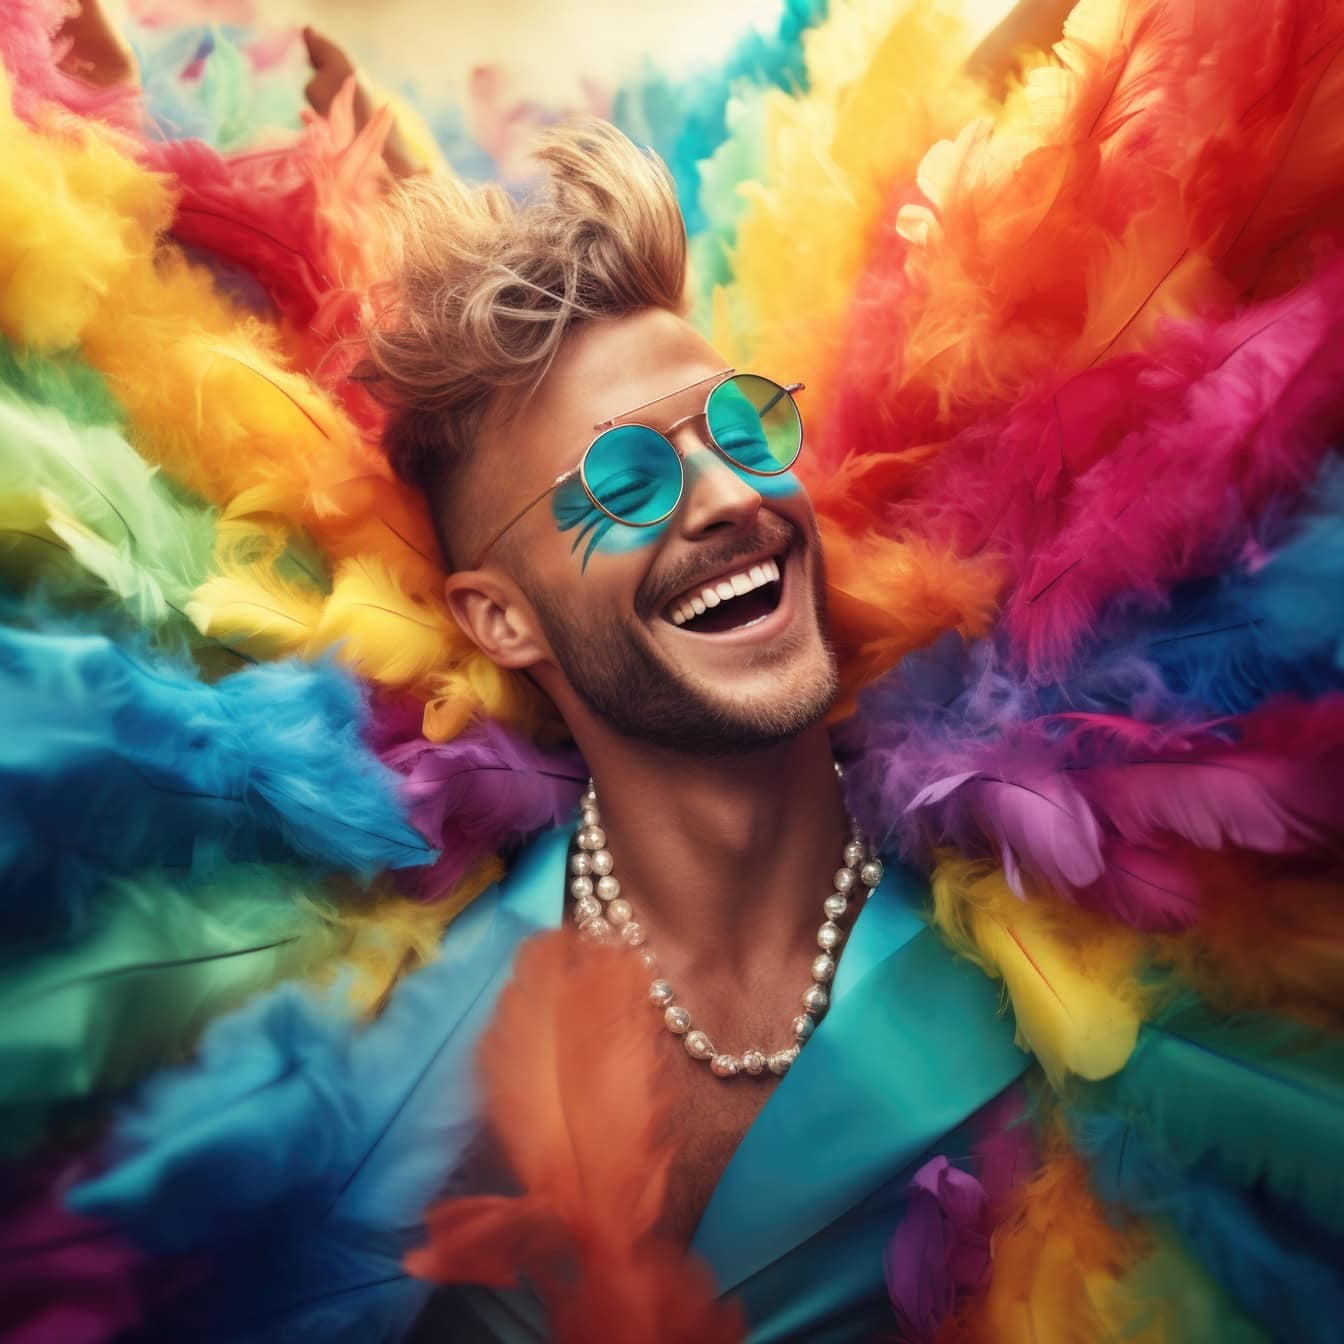 Χαμογελαστός νεαρός άνδρας με πολύχρωμα φτερά φορώντας ένα μαργαριταρένιο κολιέ σε ένα καρναβάλι, μια απεικόνιση της ελευθερίας και της ευτυχίας